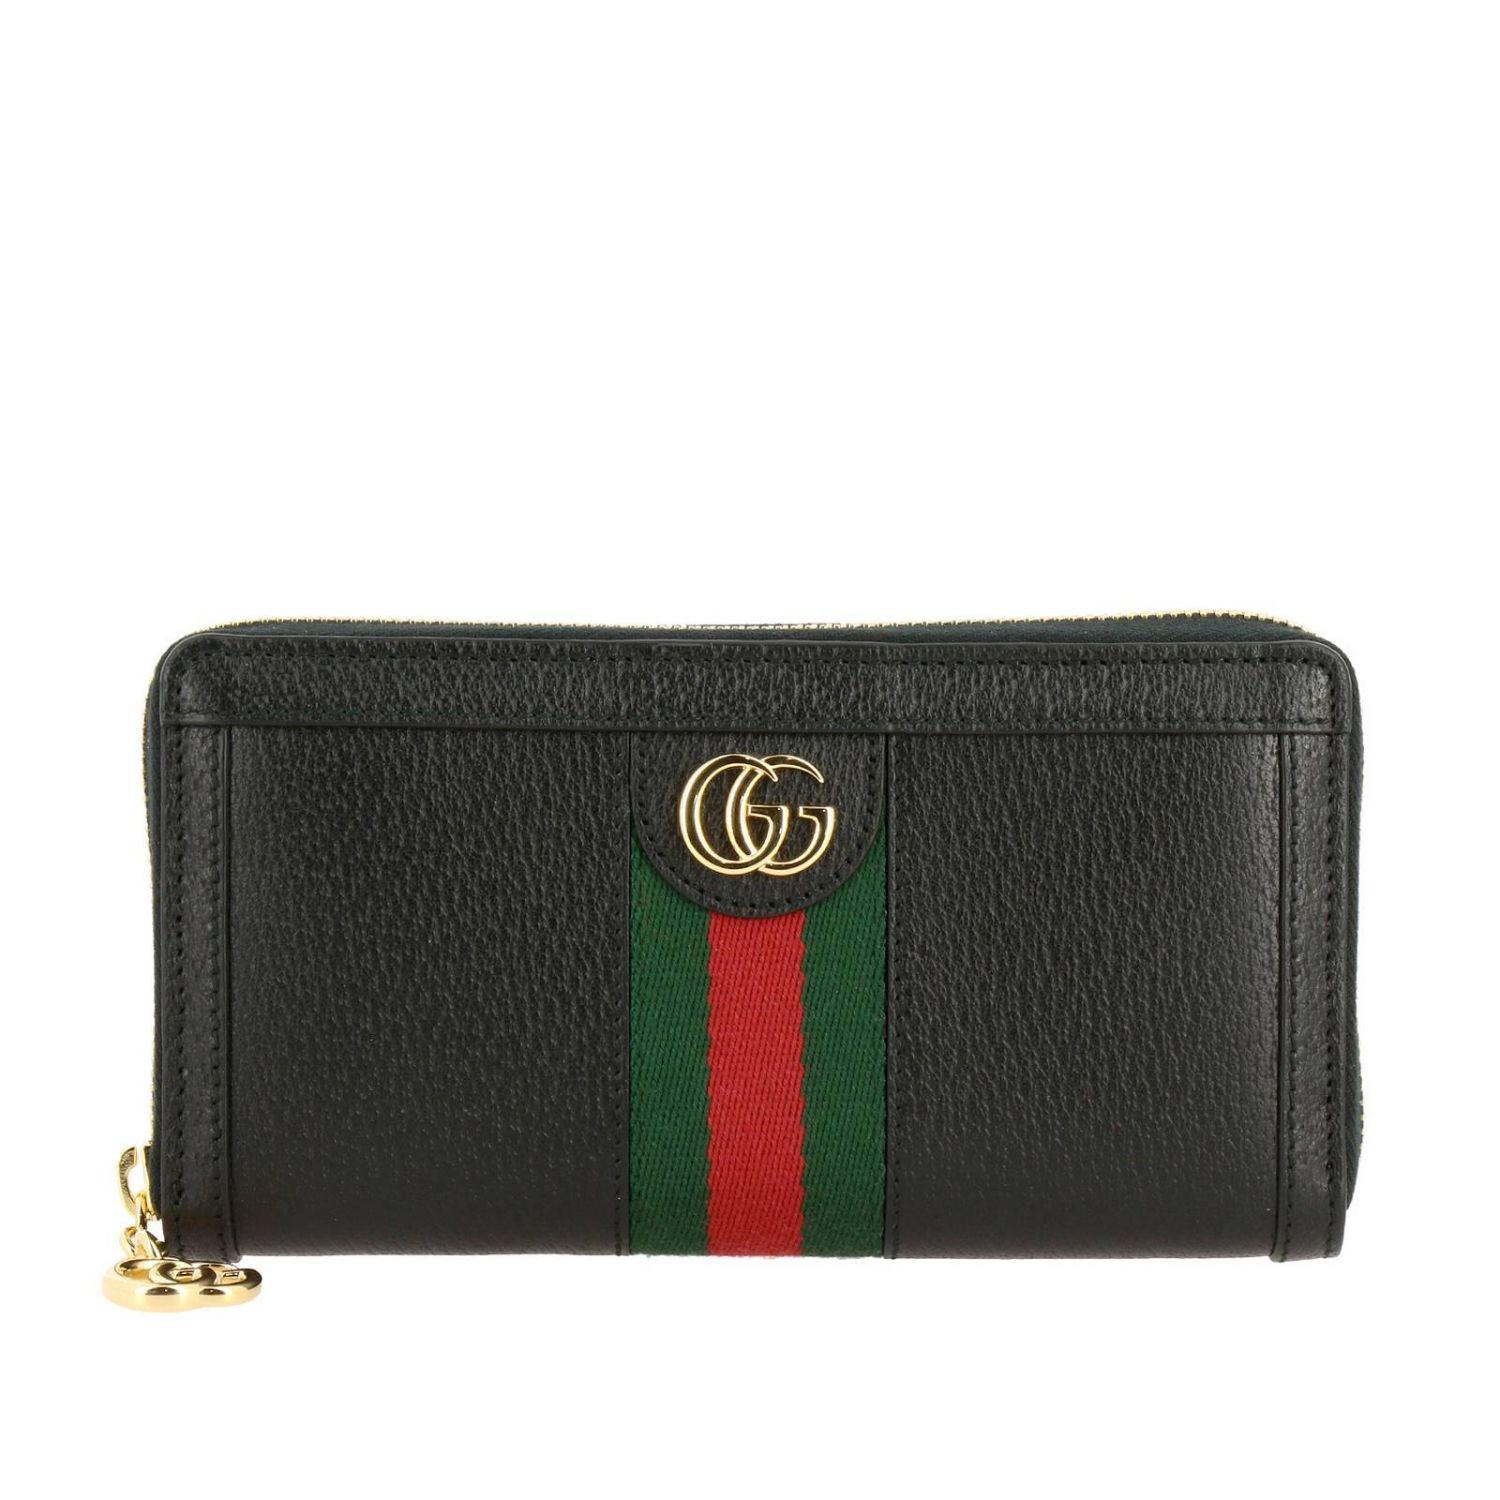 Inclinarse Alta exposición télex Gucci Women's Wallet in Black | Lyst